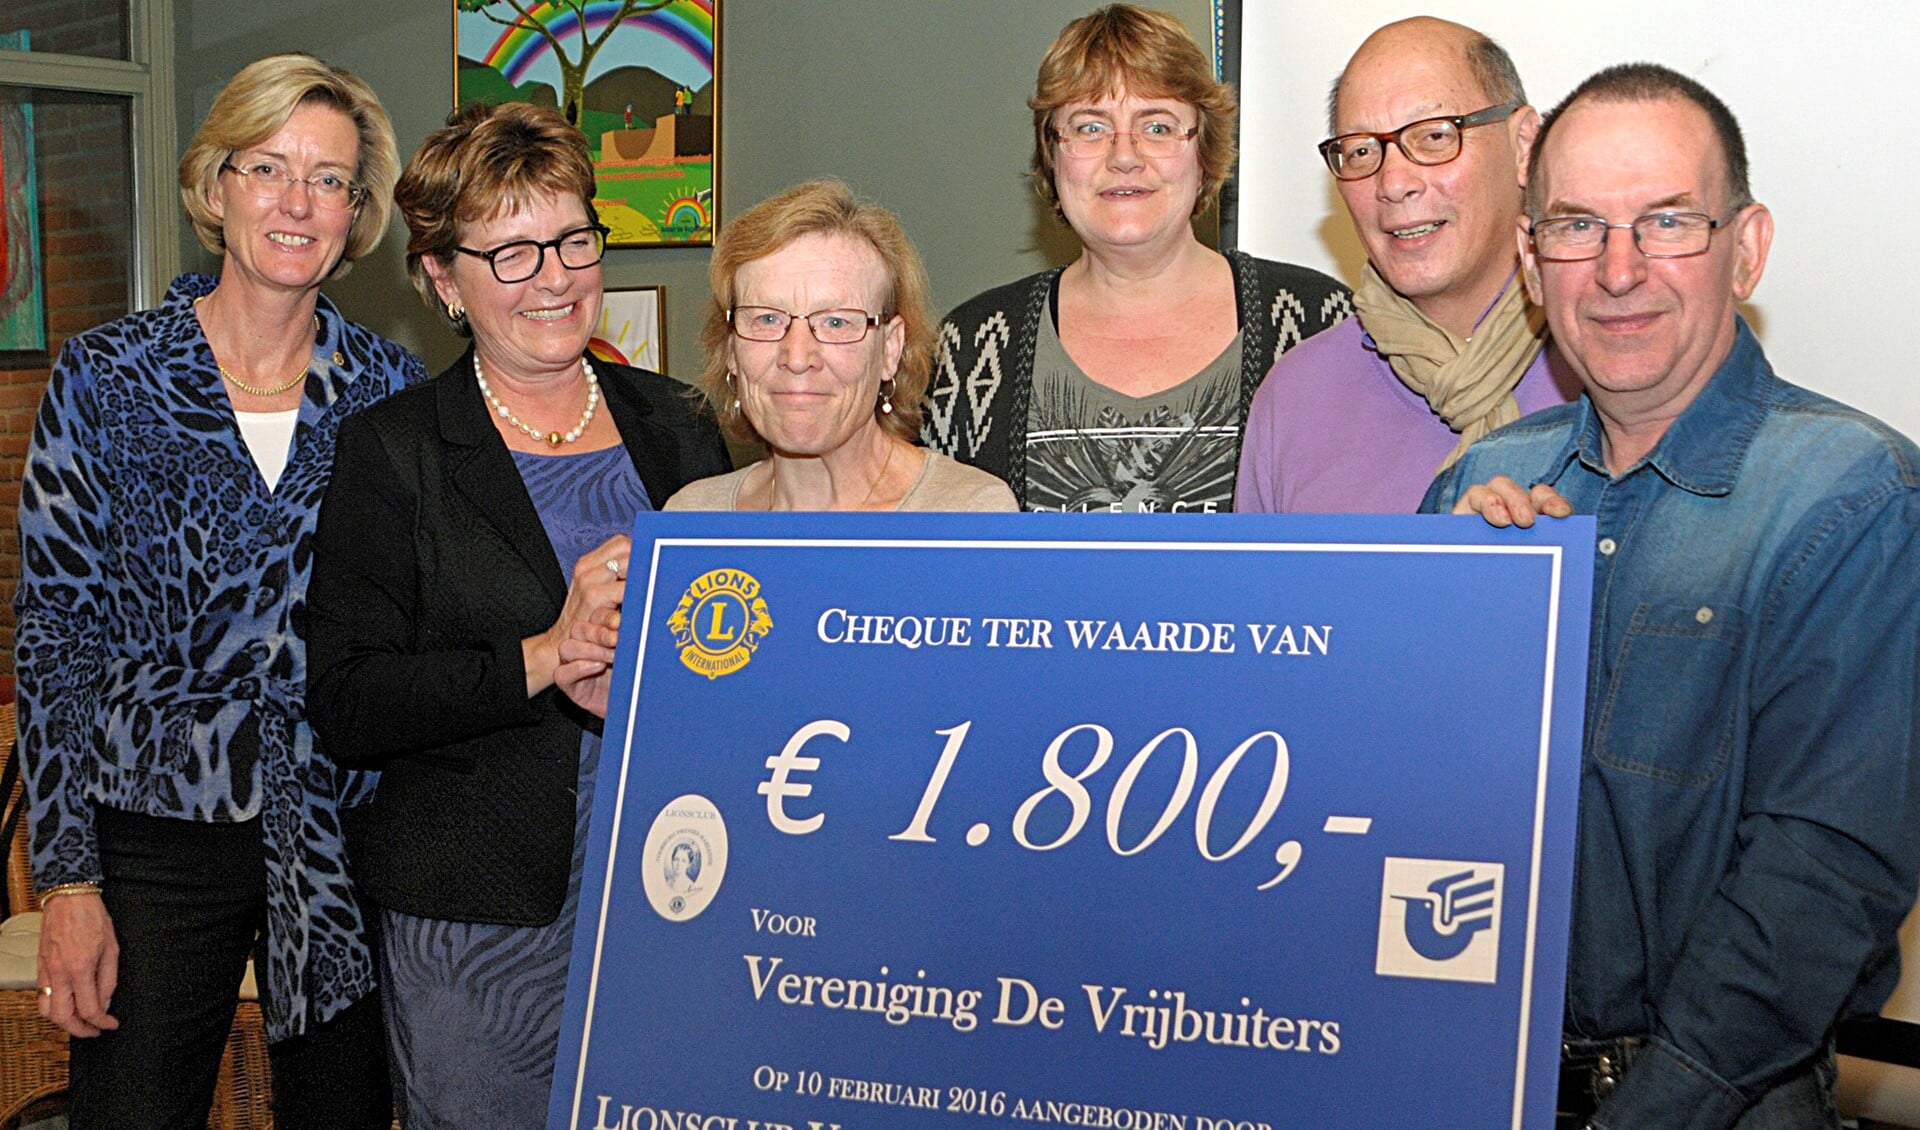 Uitreiking van de cheque aan De Vrijbuiters, met v.l.n.r. Evelyn Geest, Danielle Doon, Marian, Wilma, Jack en Adrie (foto: Michel Groen).